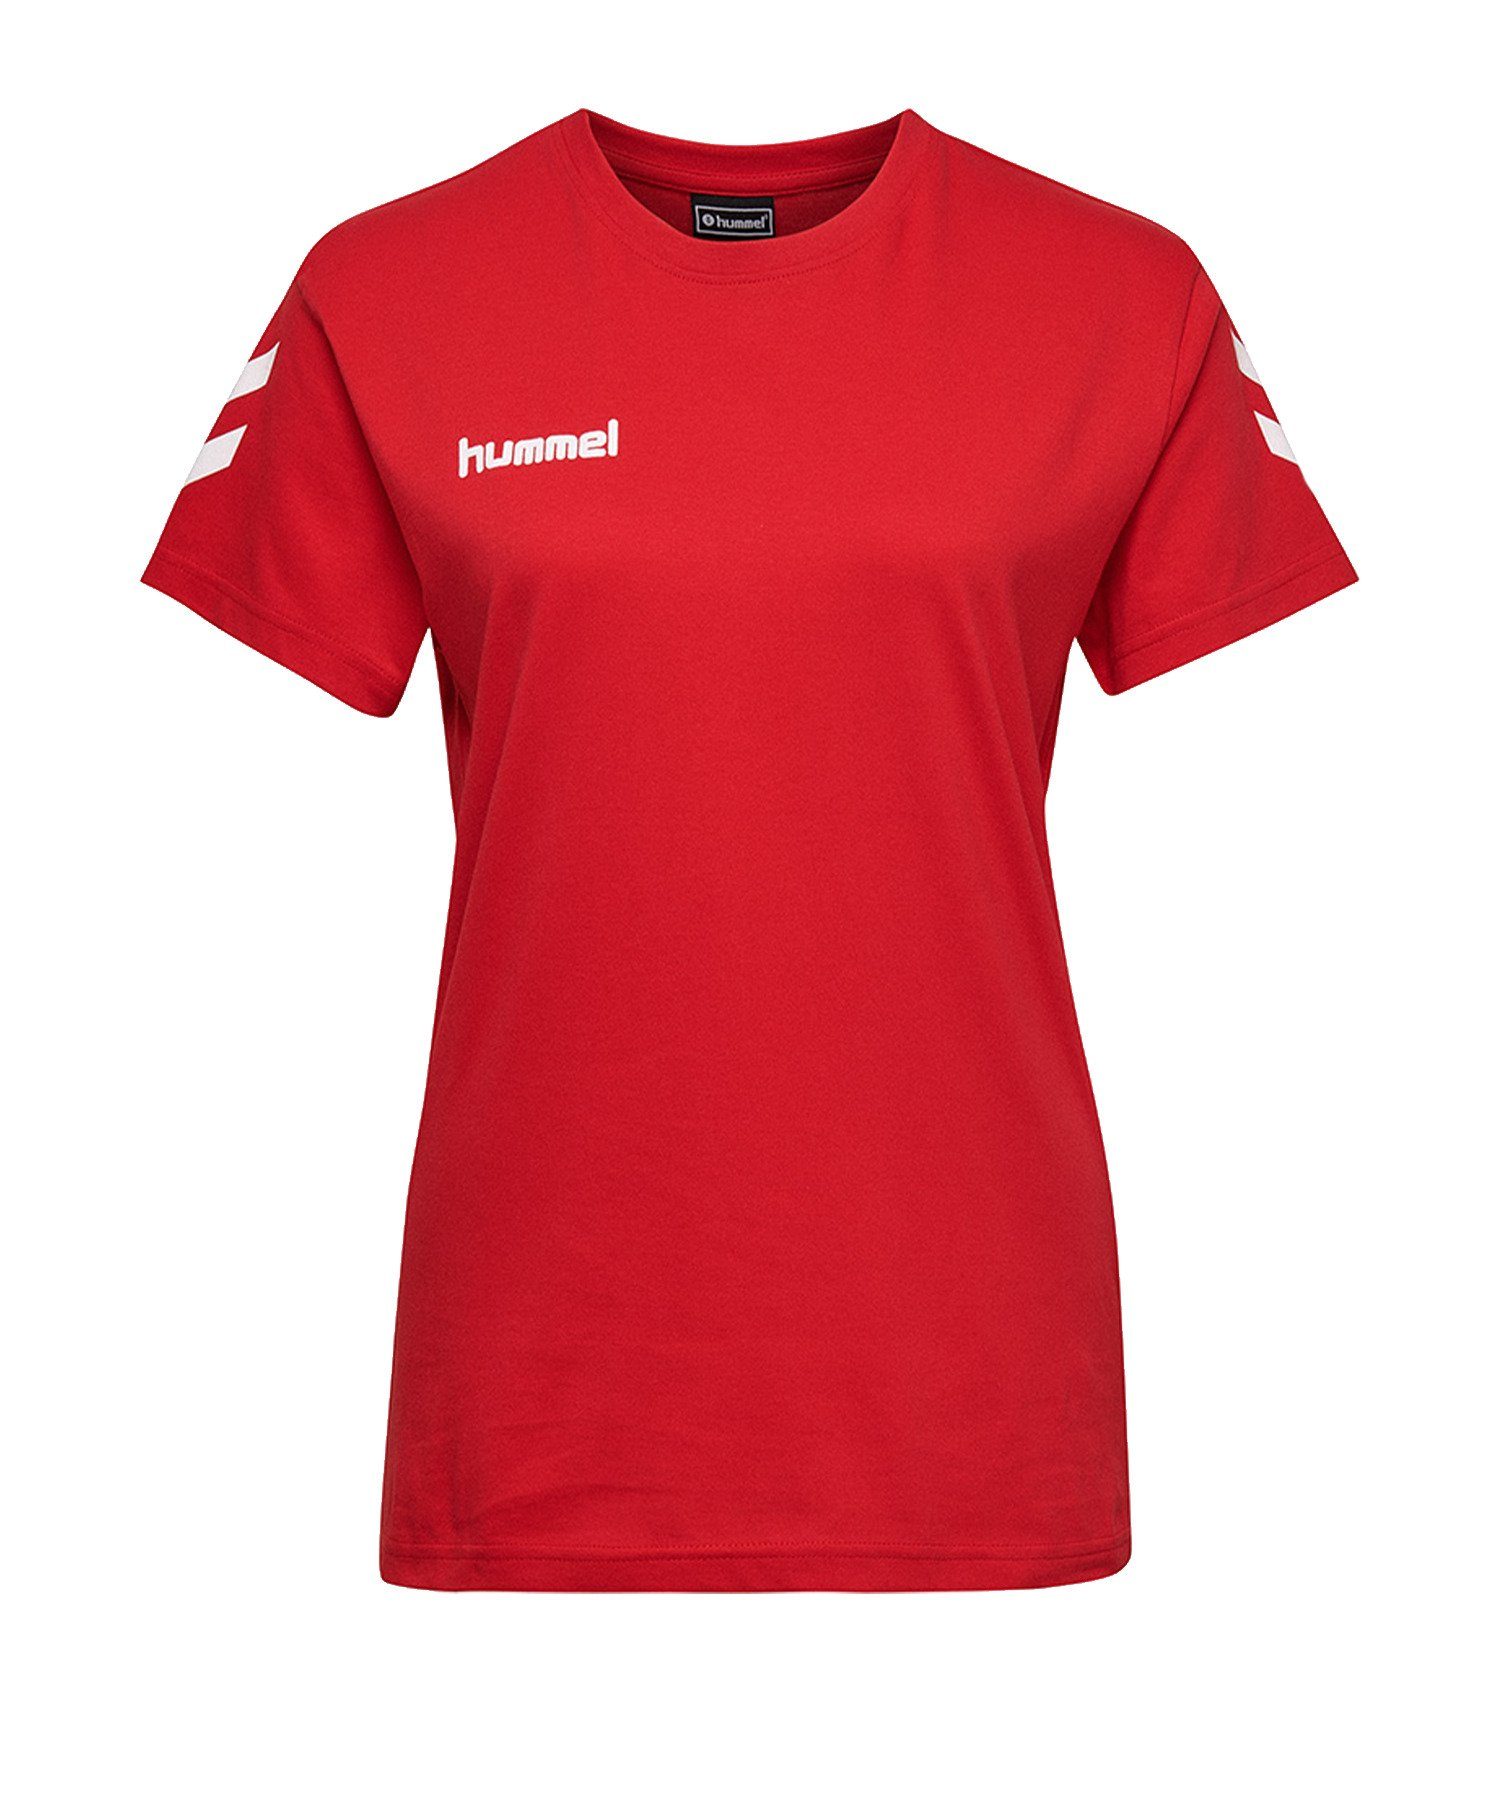 hummel T-Shirt Cotton T-Shirt Damen default Rot